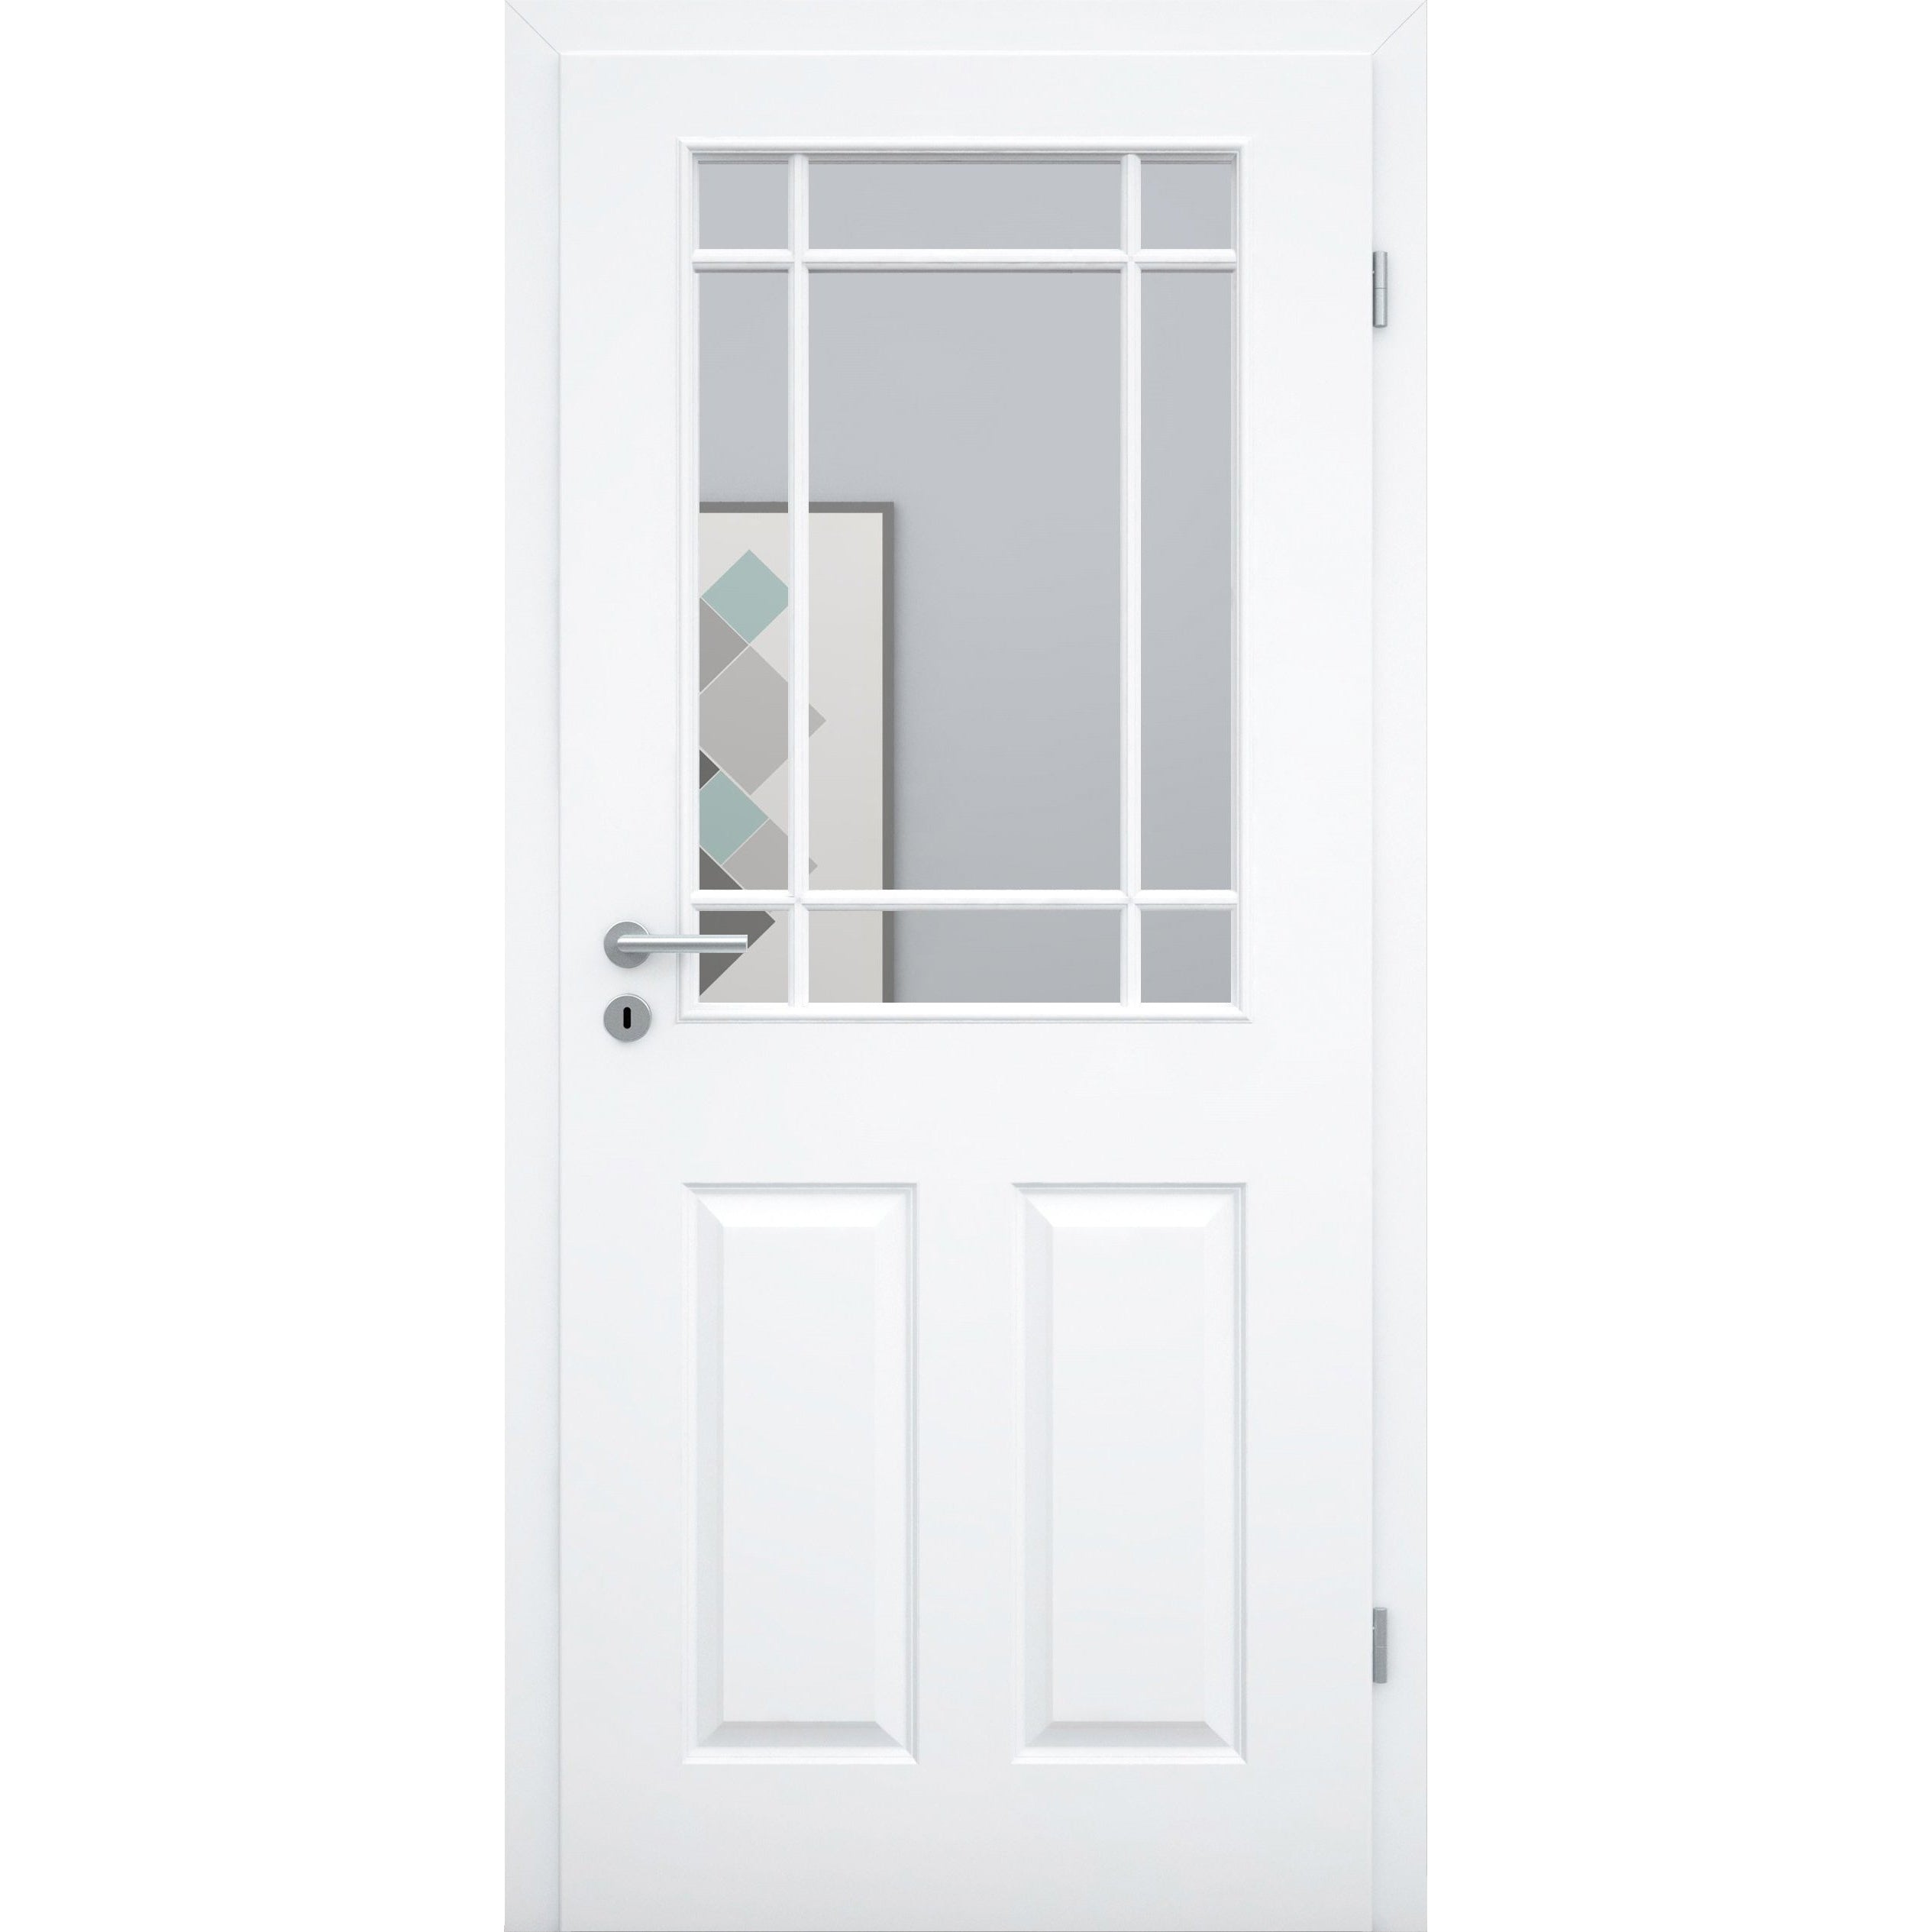 Zimmertür mit Lichtausschnitt mit Sprossenrahmen klassisch brillant-weiß 4 Kassetten Designkante - Modell Stiltür K43LASPK